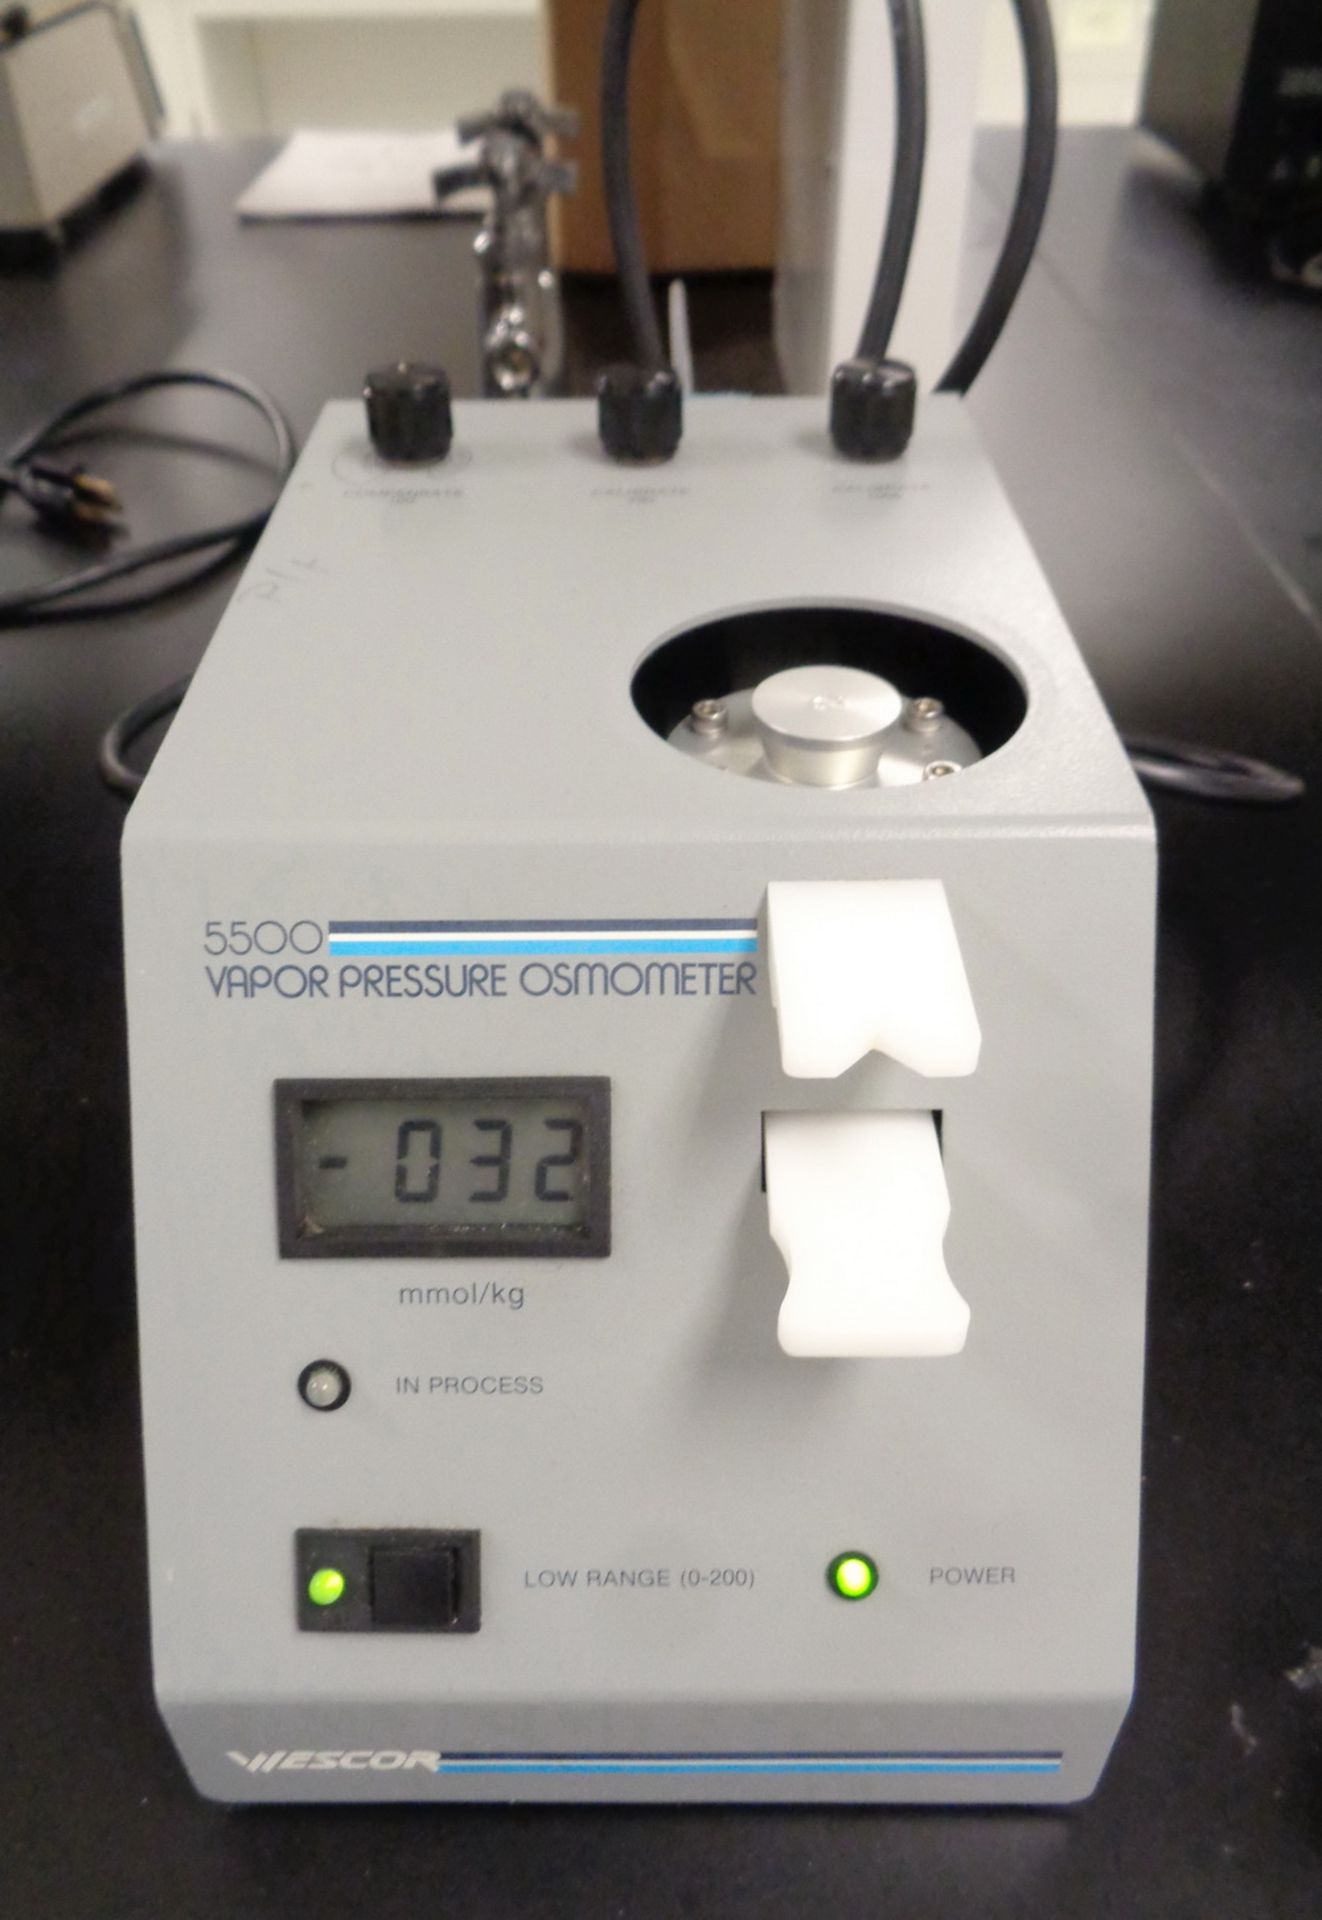 Wescor 5500 Vapor Pressure Osmometer, S/N 93B2575